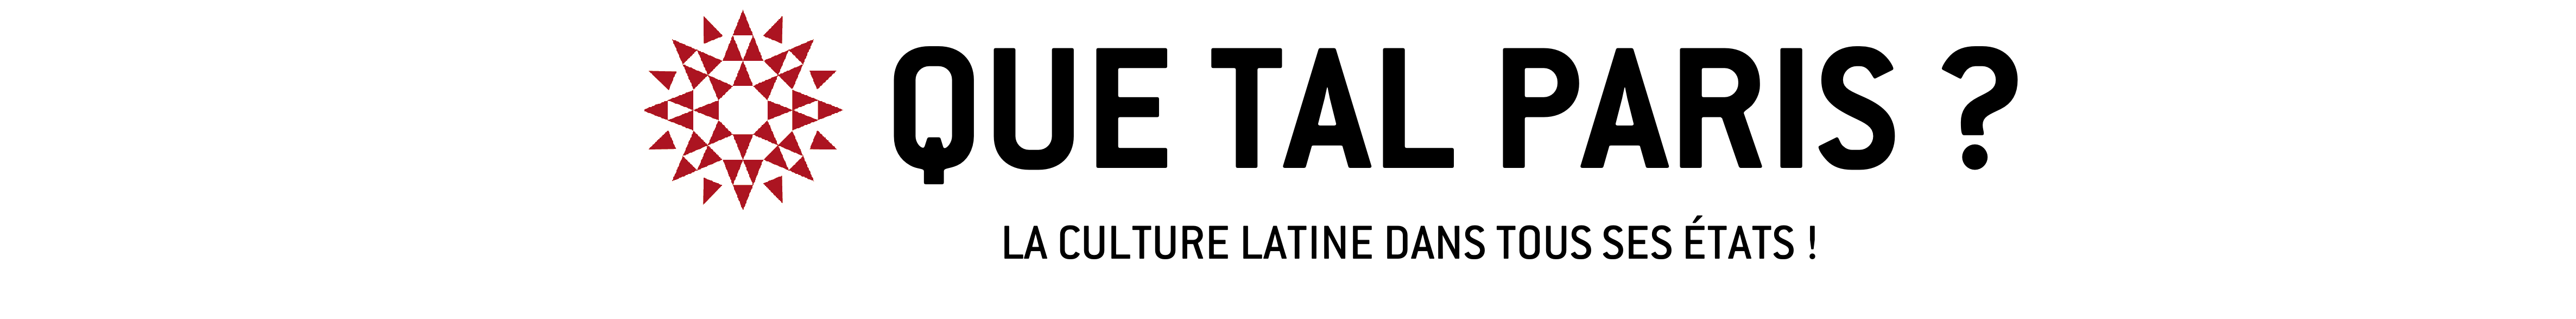 Culture espagnole et latine : cinéma latino, musique espagnole, littérature, art, spectacles - Que Tal Paris ?